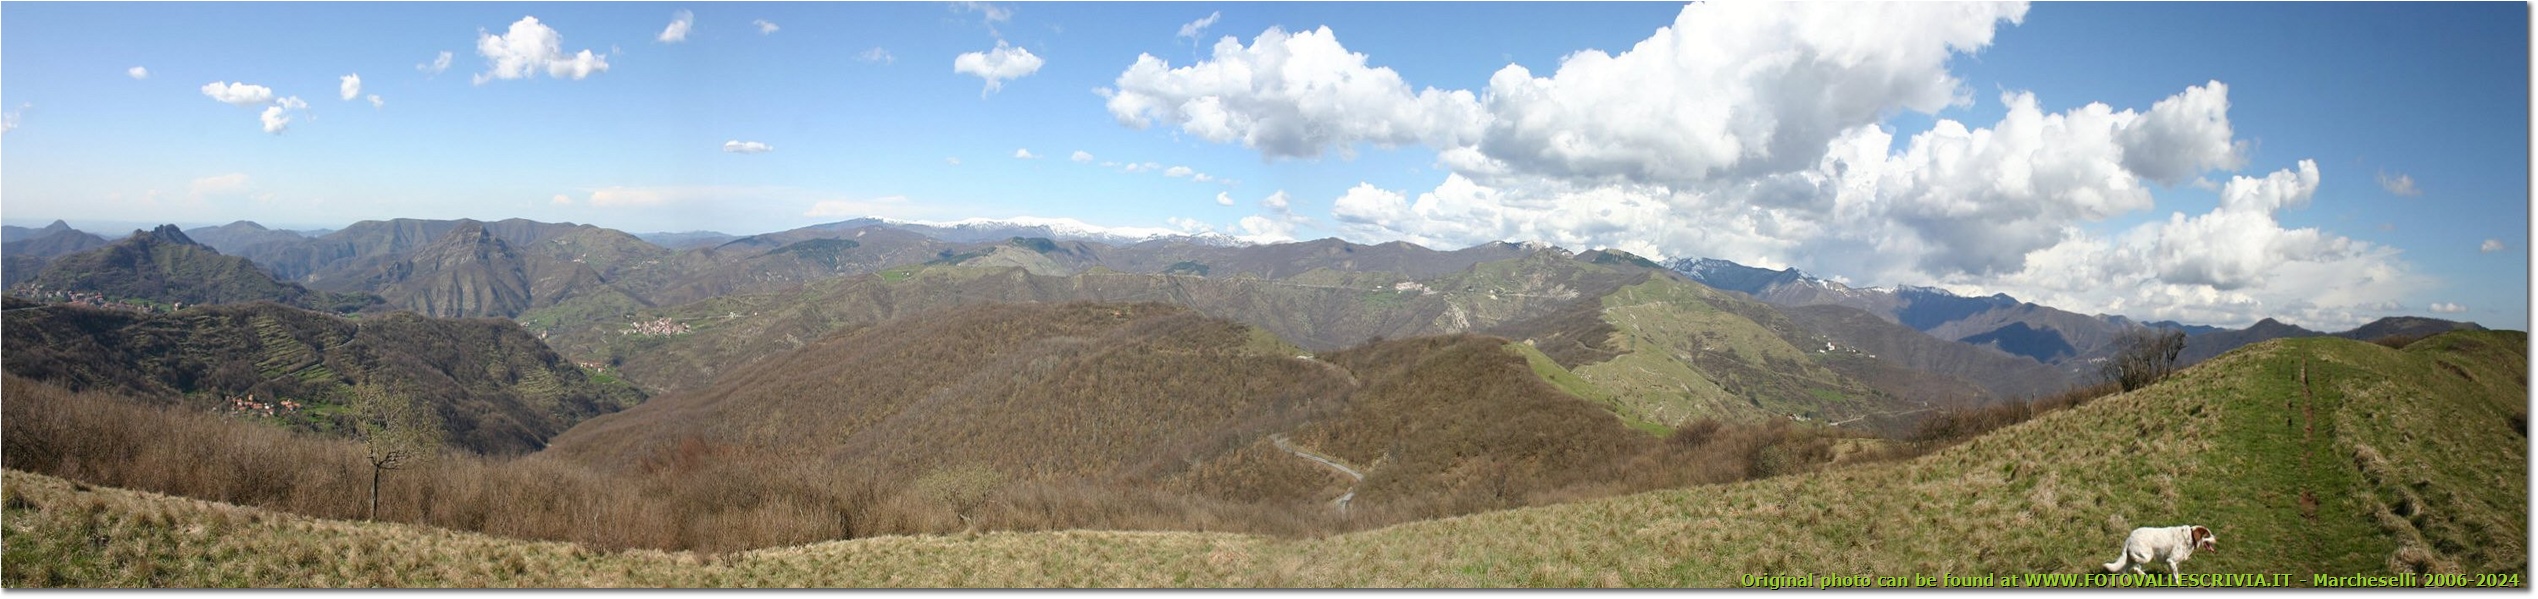 Ancora una panoramica dal Monte Proventino - Crocefieschi&Vobbia - 2005 - Panorami - Estate - Canon EOS 300D